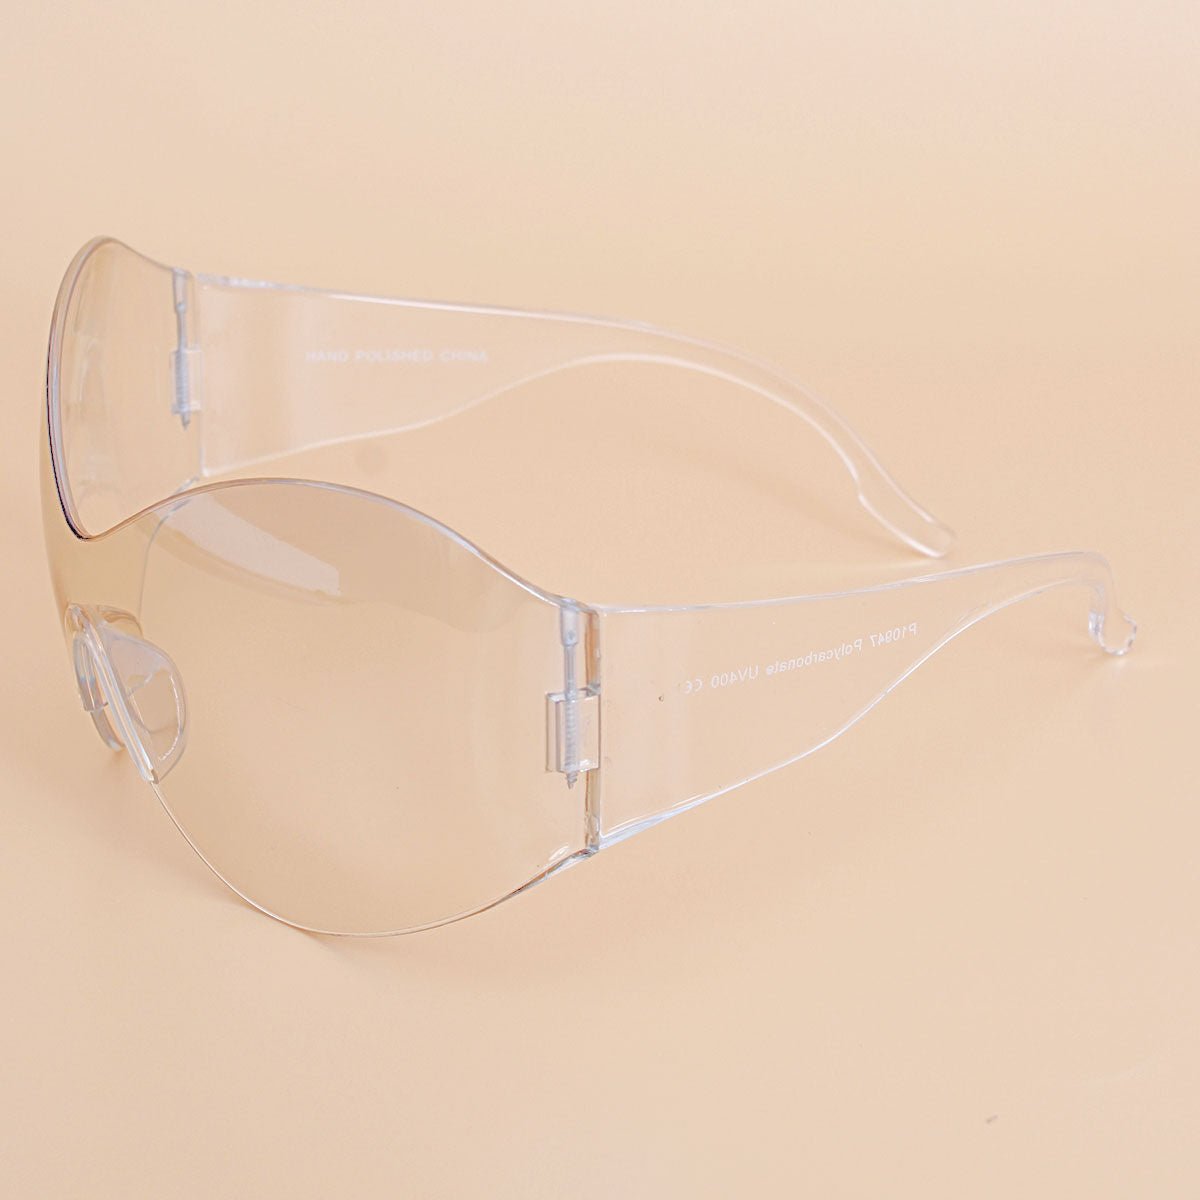 Sunglasses Butterfly Mask Clear Eyewear for Women - Bae Apparel